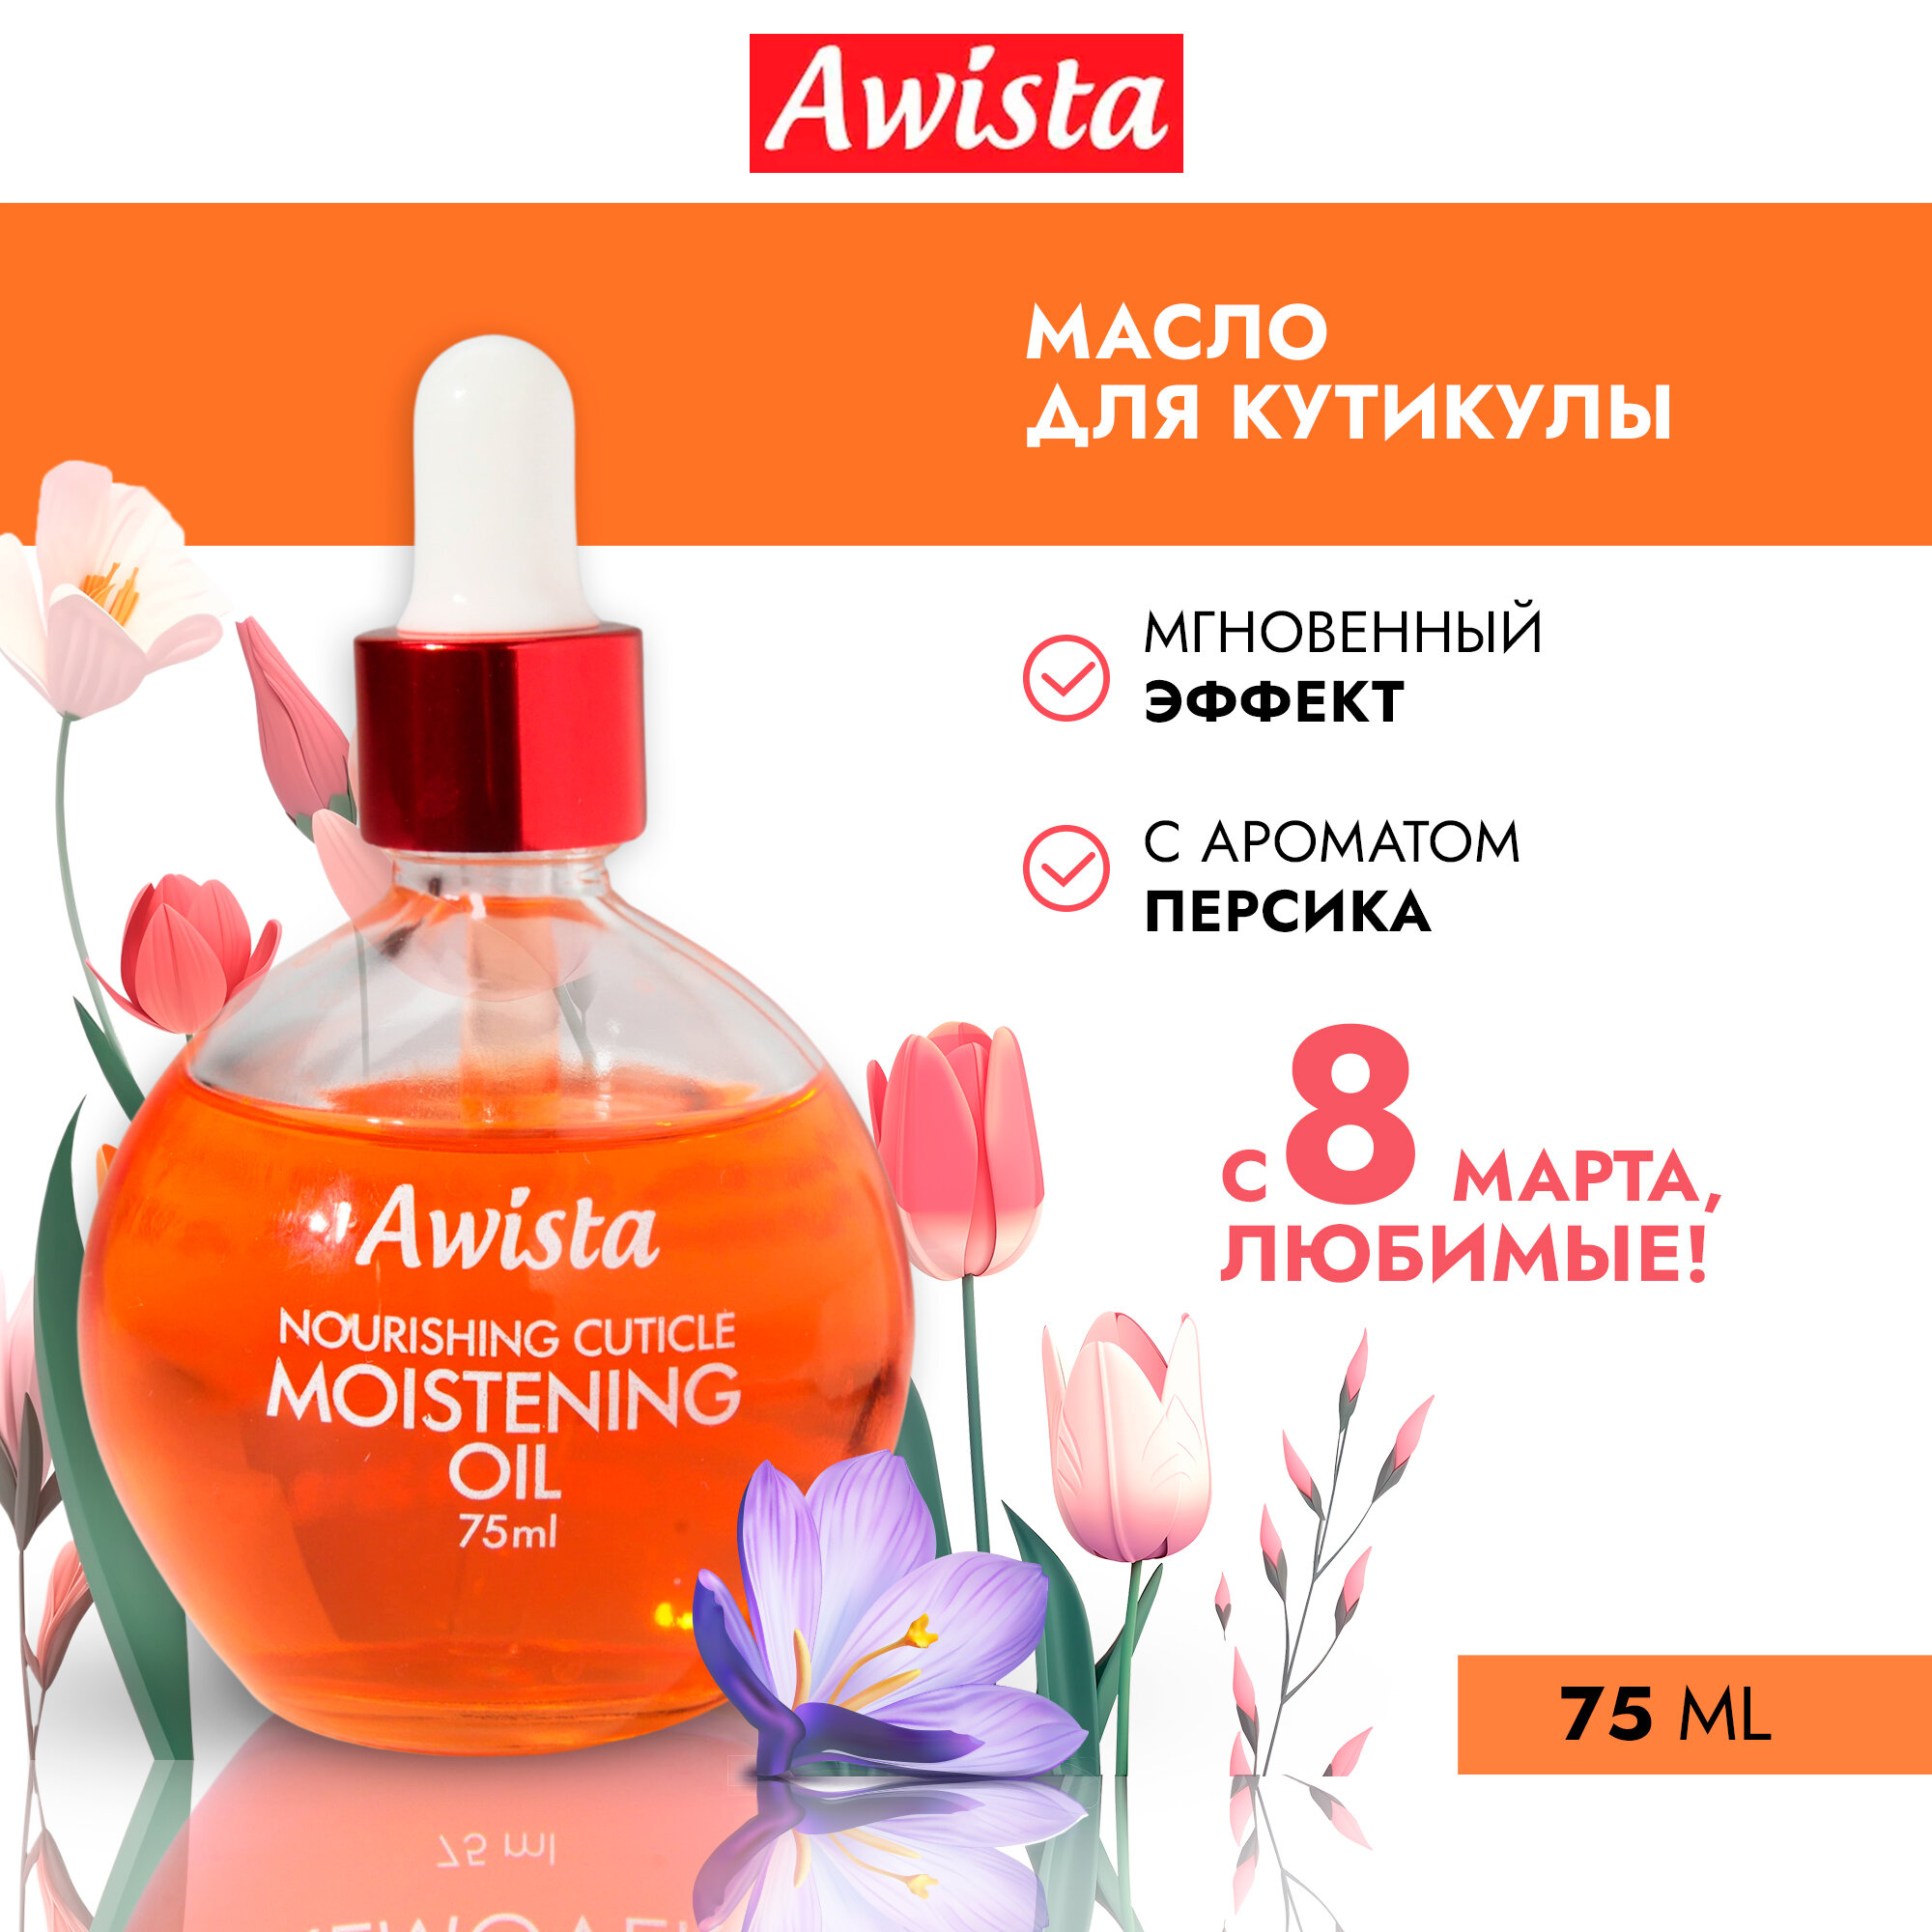 Масло для ногтей и кутикулы "Awista" 75мл. в ассортименте Персик